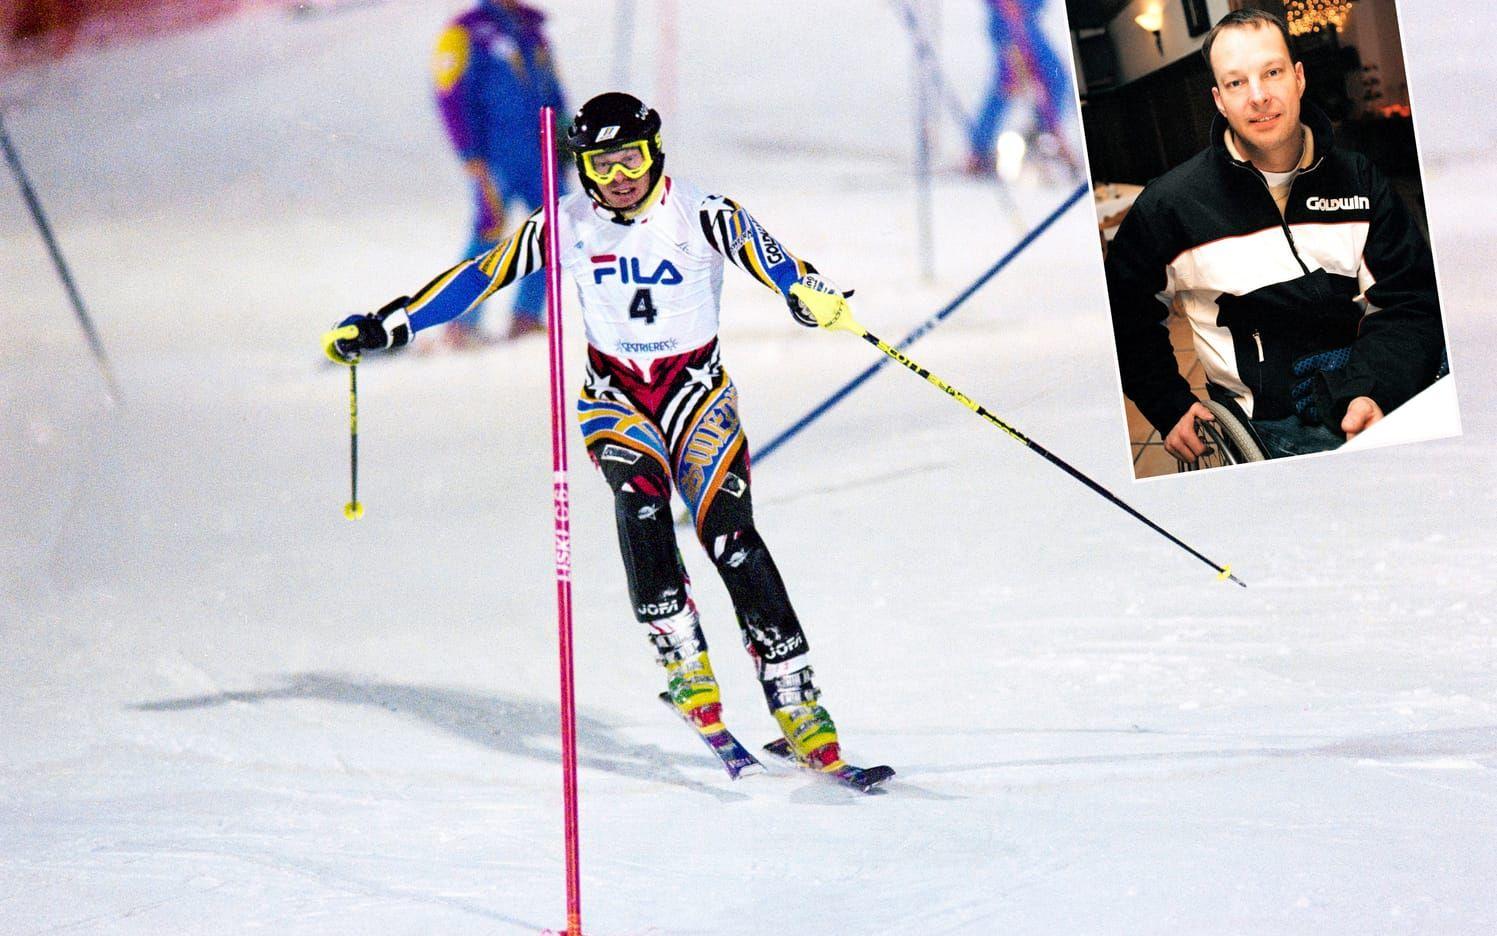 Thomas Fogdö föll olyckligt på en träning i Åre 1995. Han bröt ryggen och blev förlamad från midjan och neråt. Foto: Bildbyrån